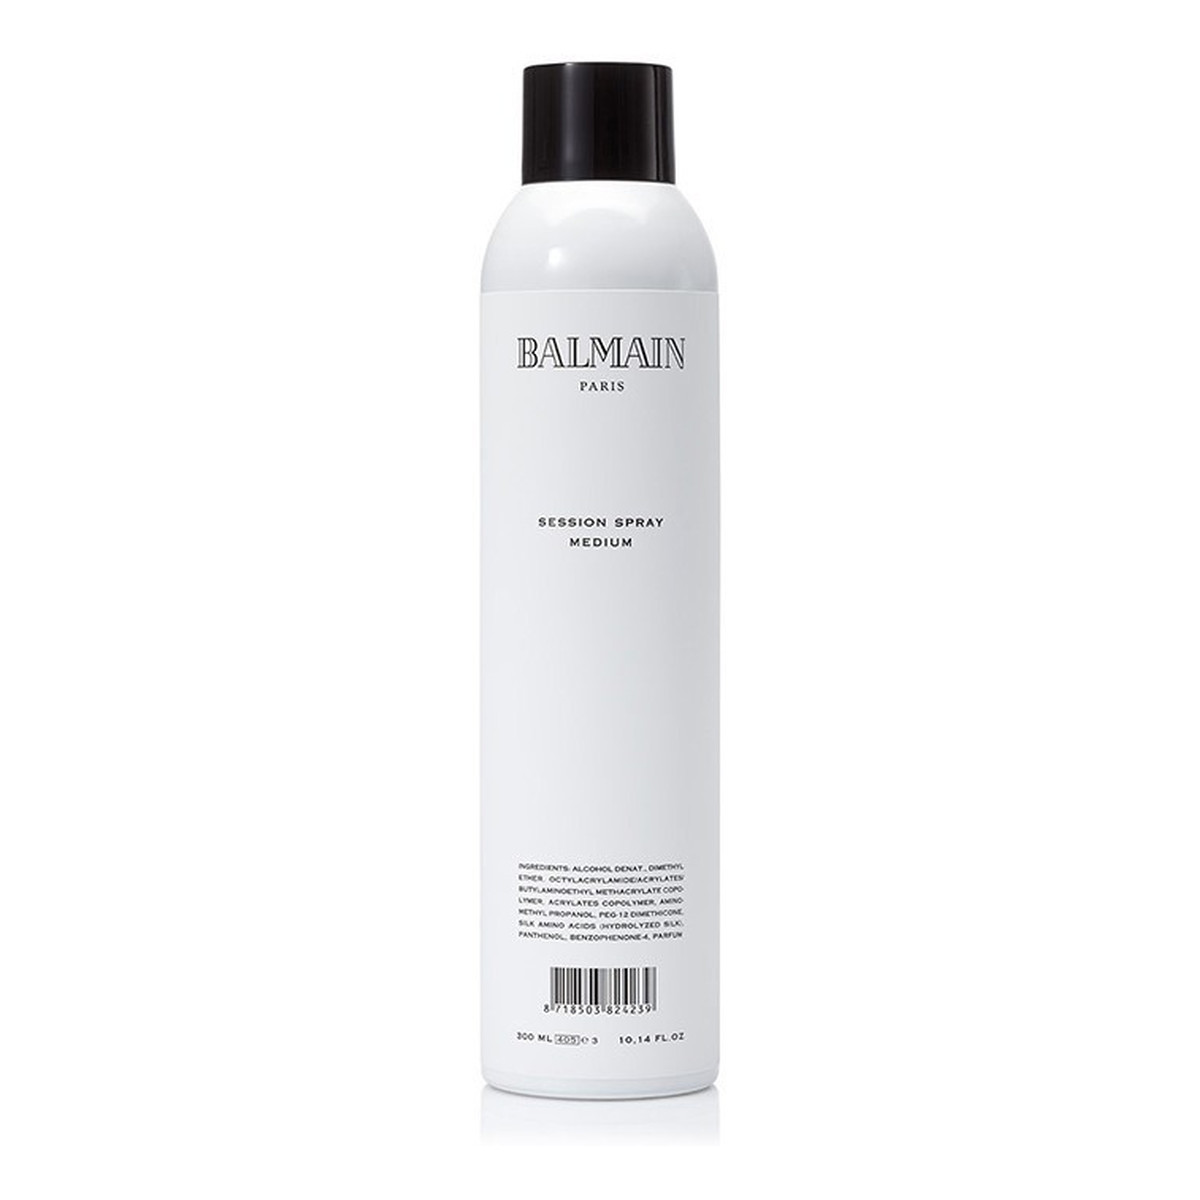 Balmain Session Spray Medium lakier do włosów średnio utrwalajacy 300ml